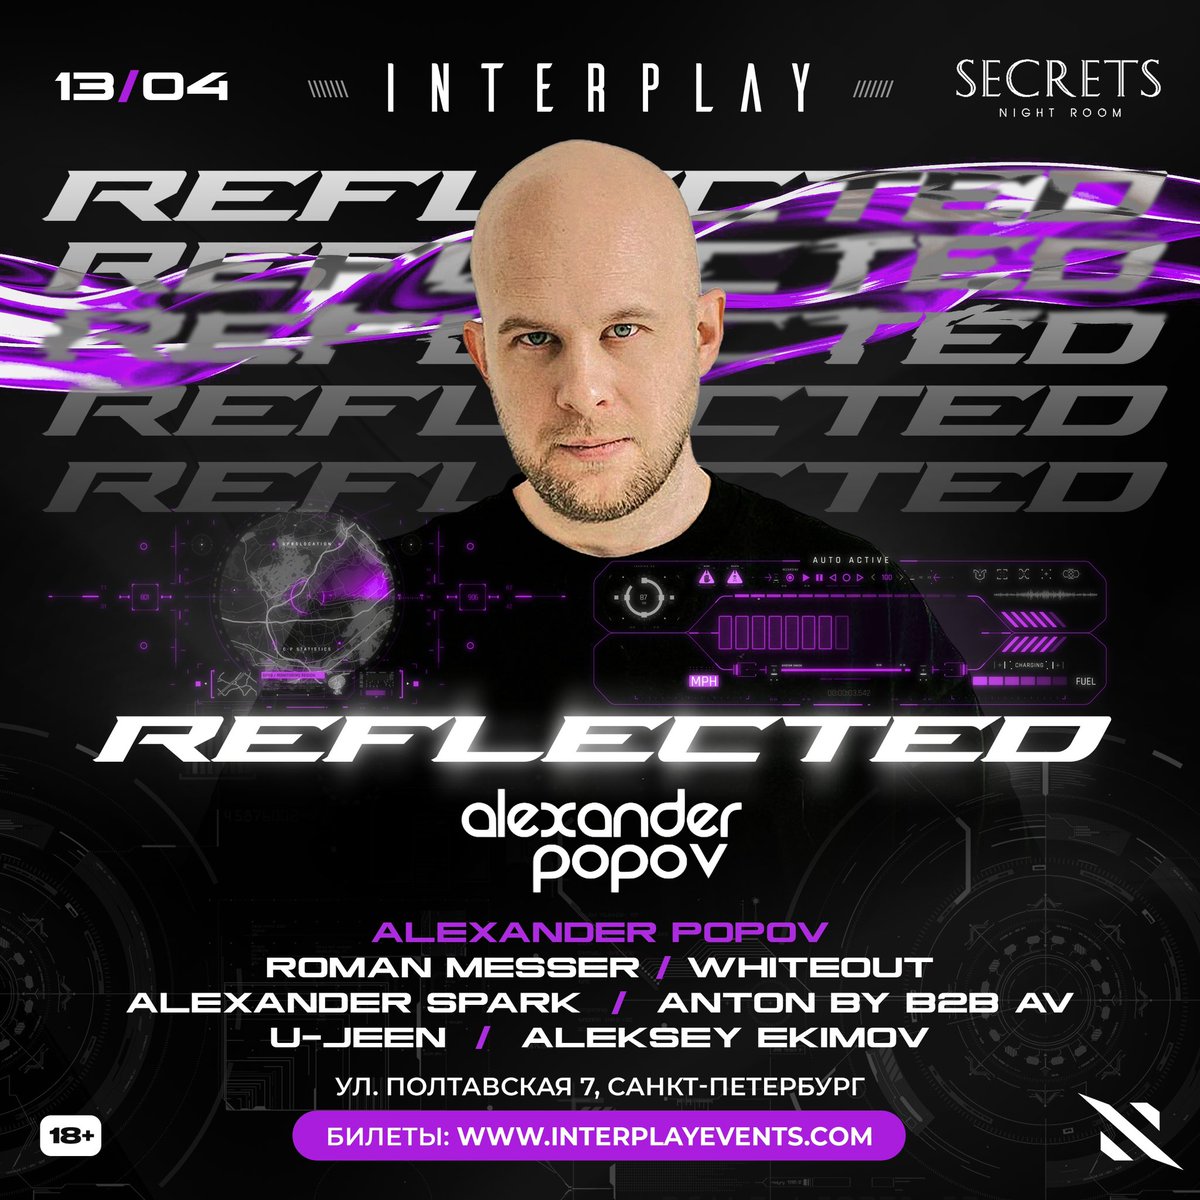 Санкт-Петербург, с нетерпением жду встречи с вами уже завтра на вечеринке Interplay Reflected ￼ Билеты: interplayevents.com